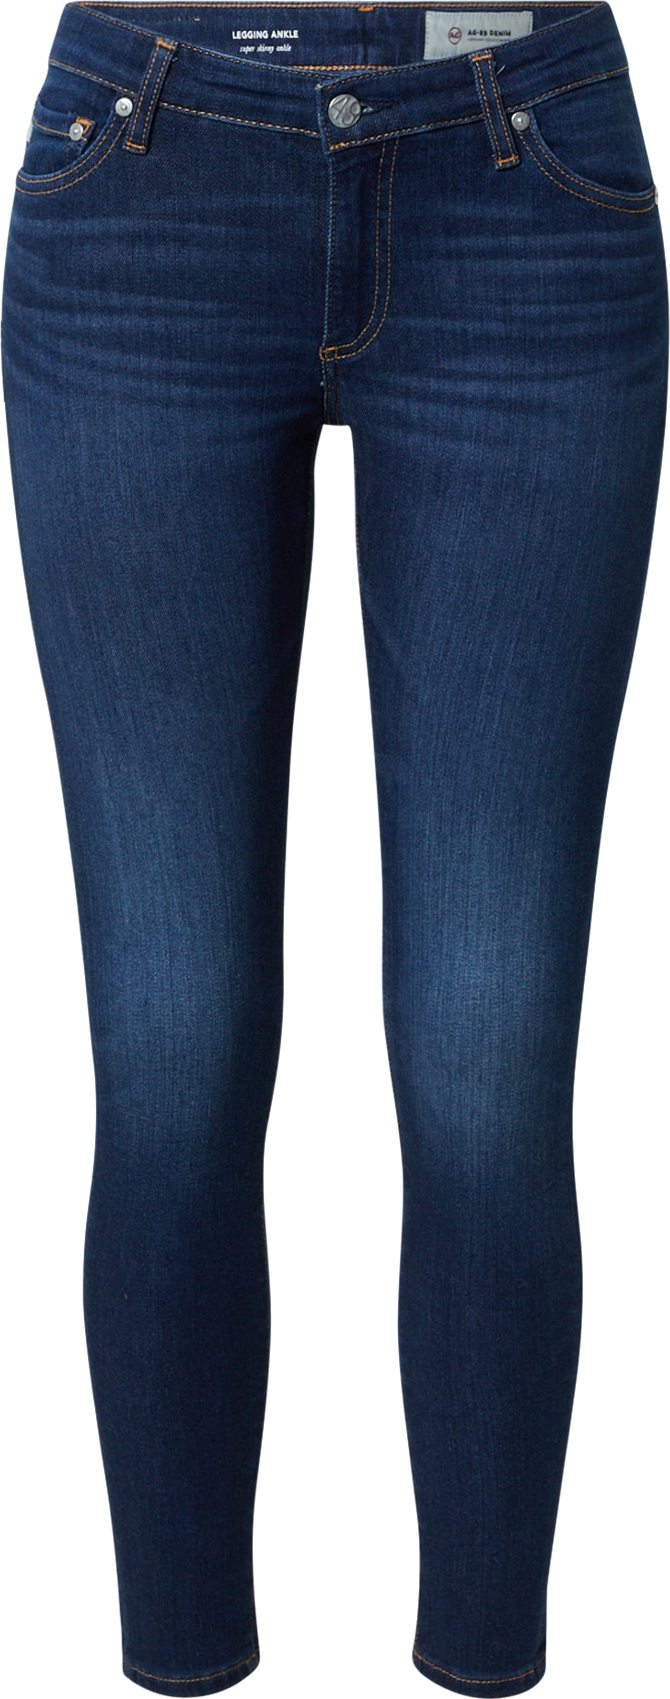 Džíny 'Legging Ankle' ag jeans námořnická modř